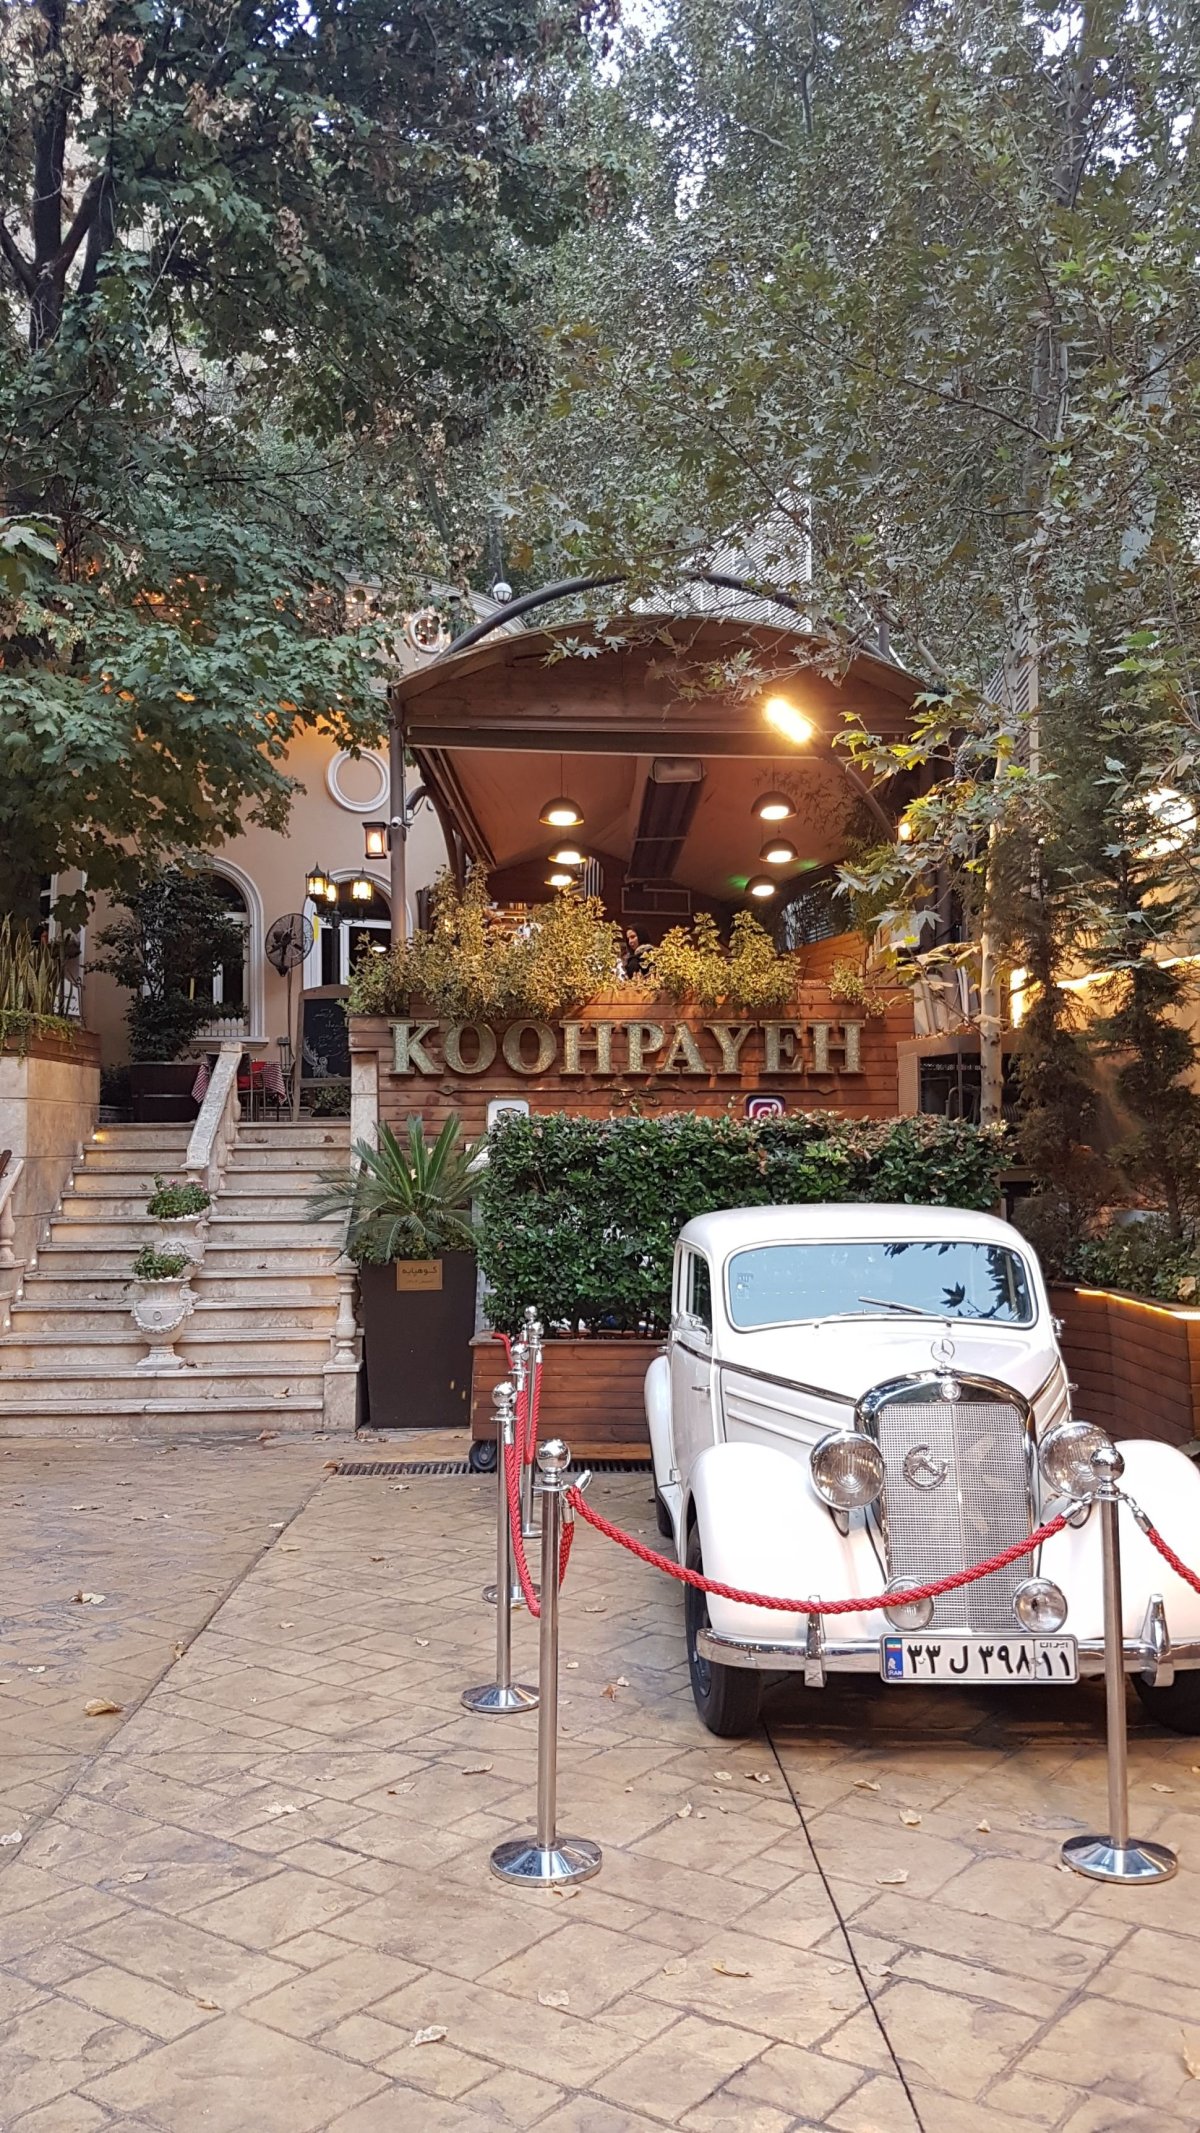 Restaurace Koopayeh.